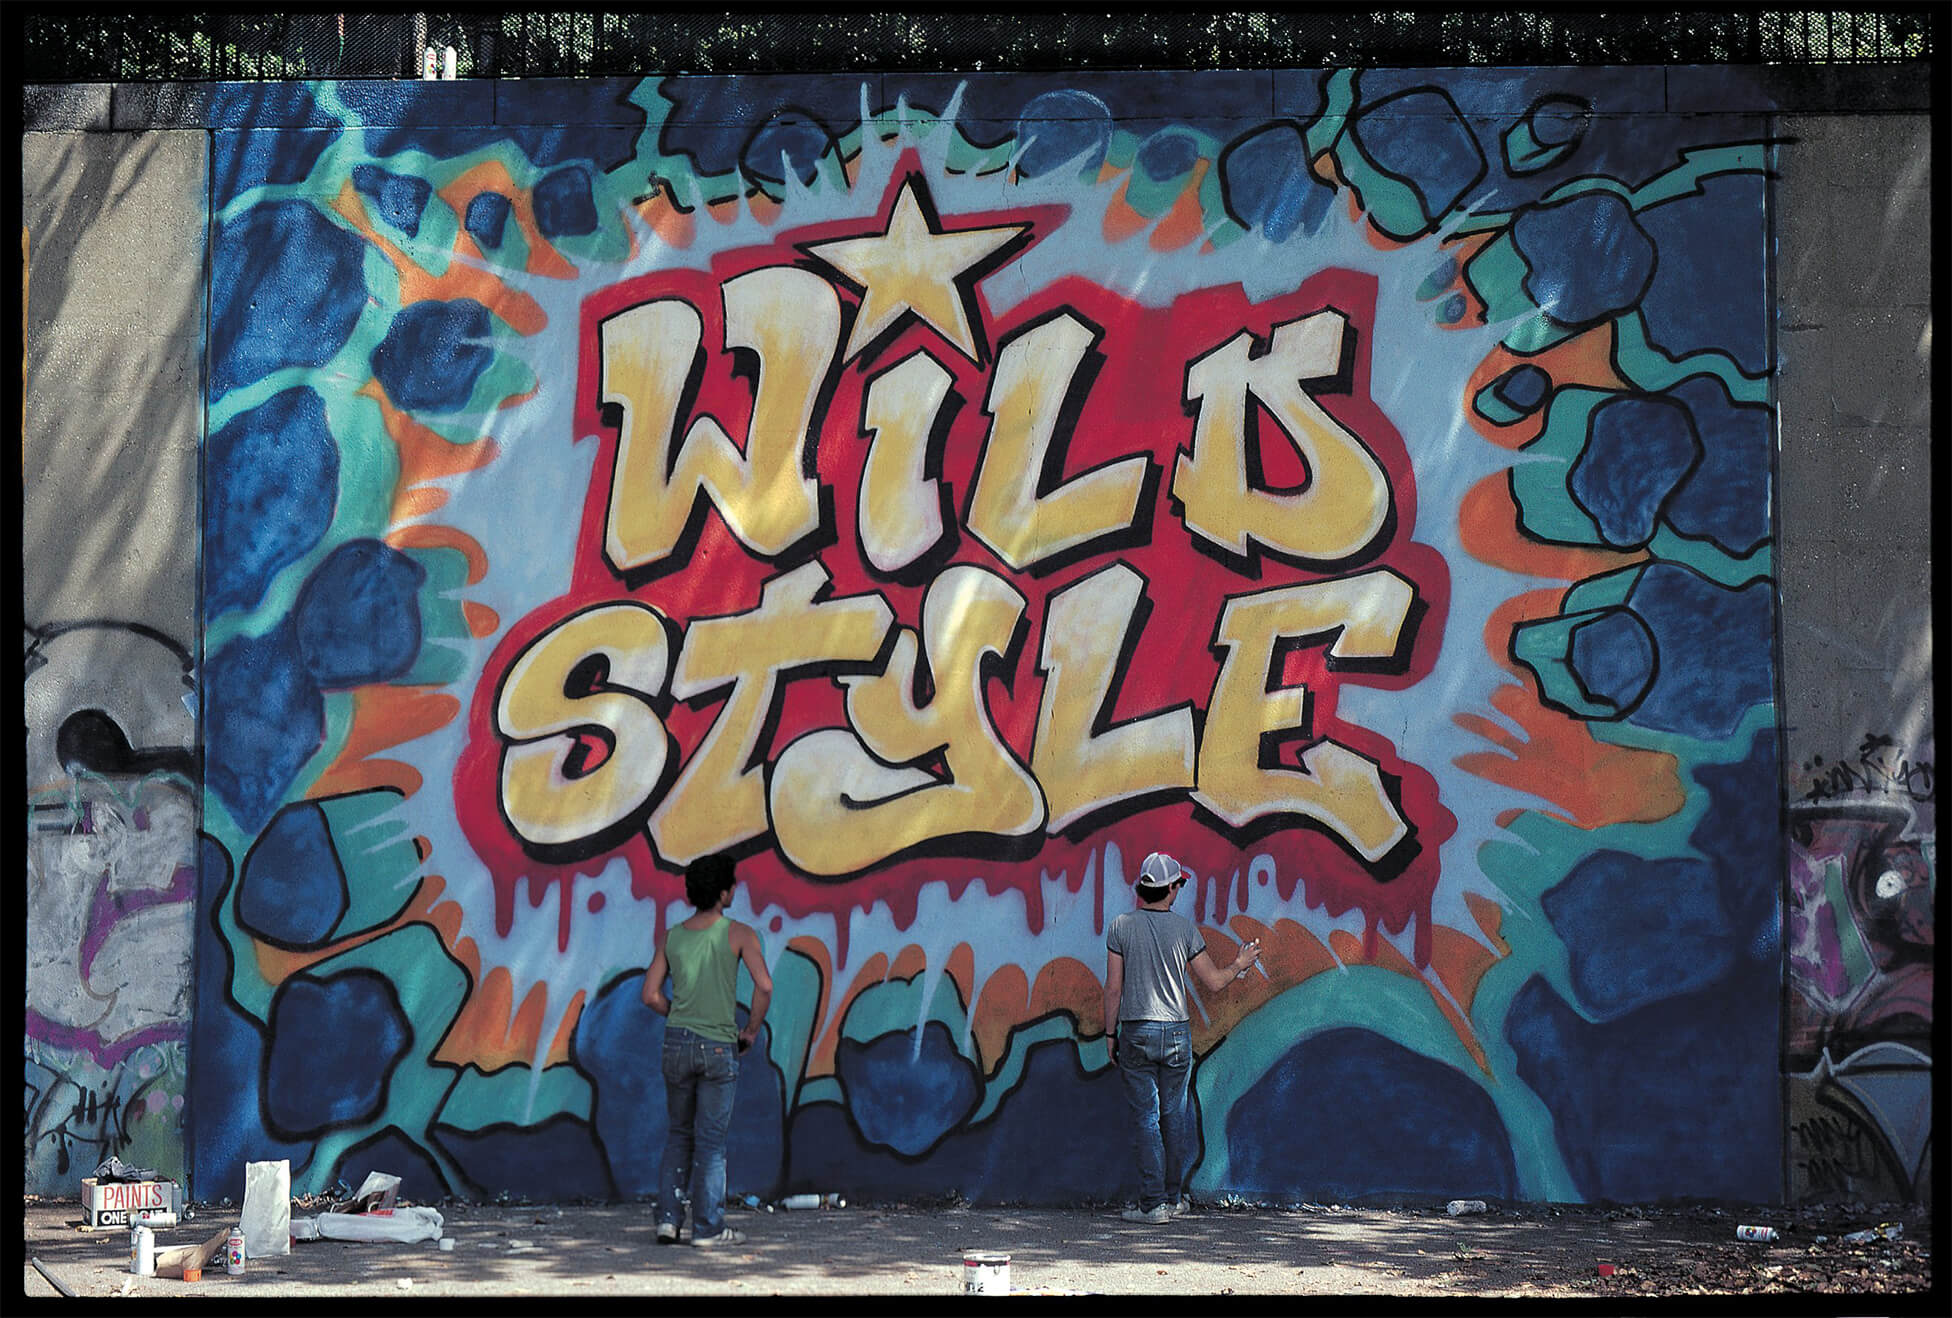 Na zdjeciu widzimy sciane pokryta kolorowym grafitti najbardziej rzuca sie w oczy napis wild style